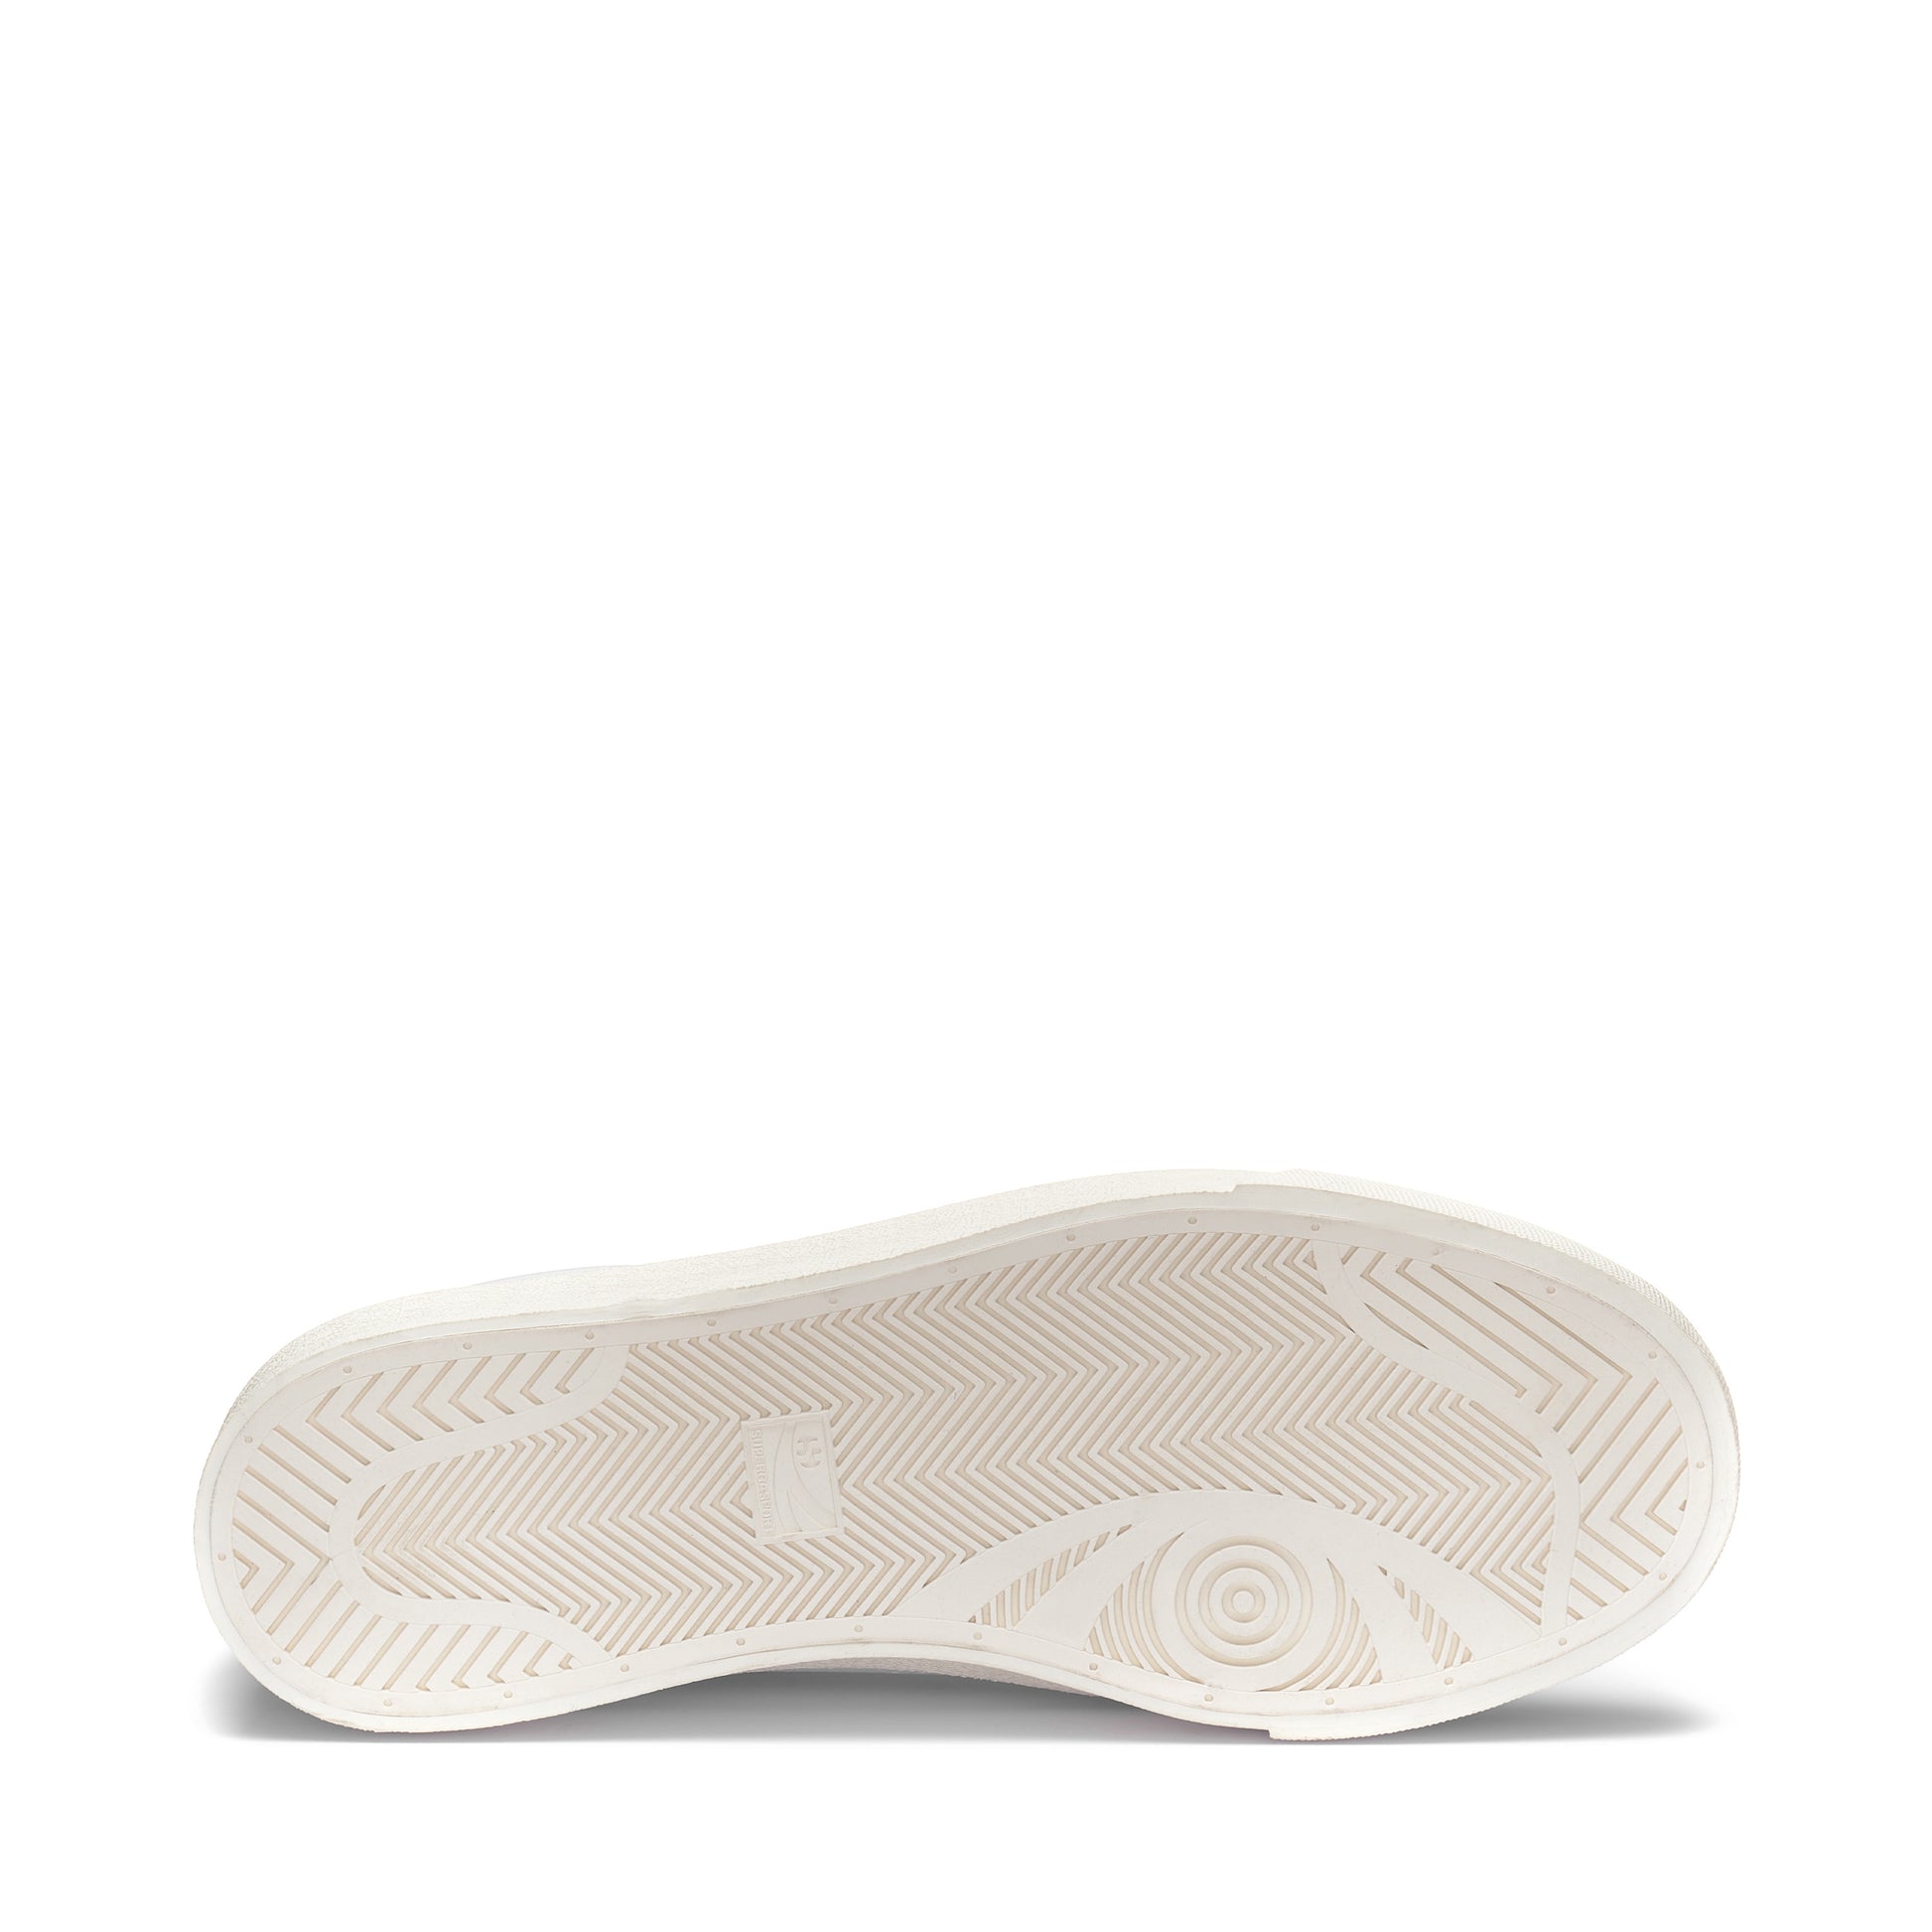 cream rubber sole